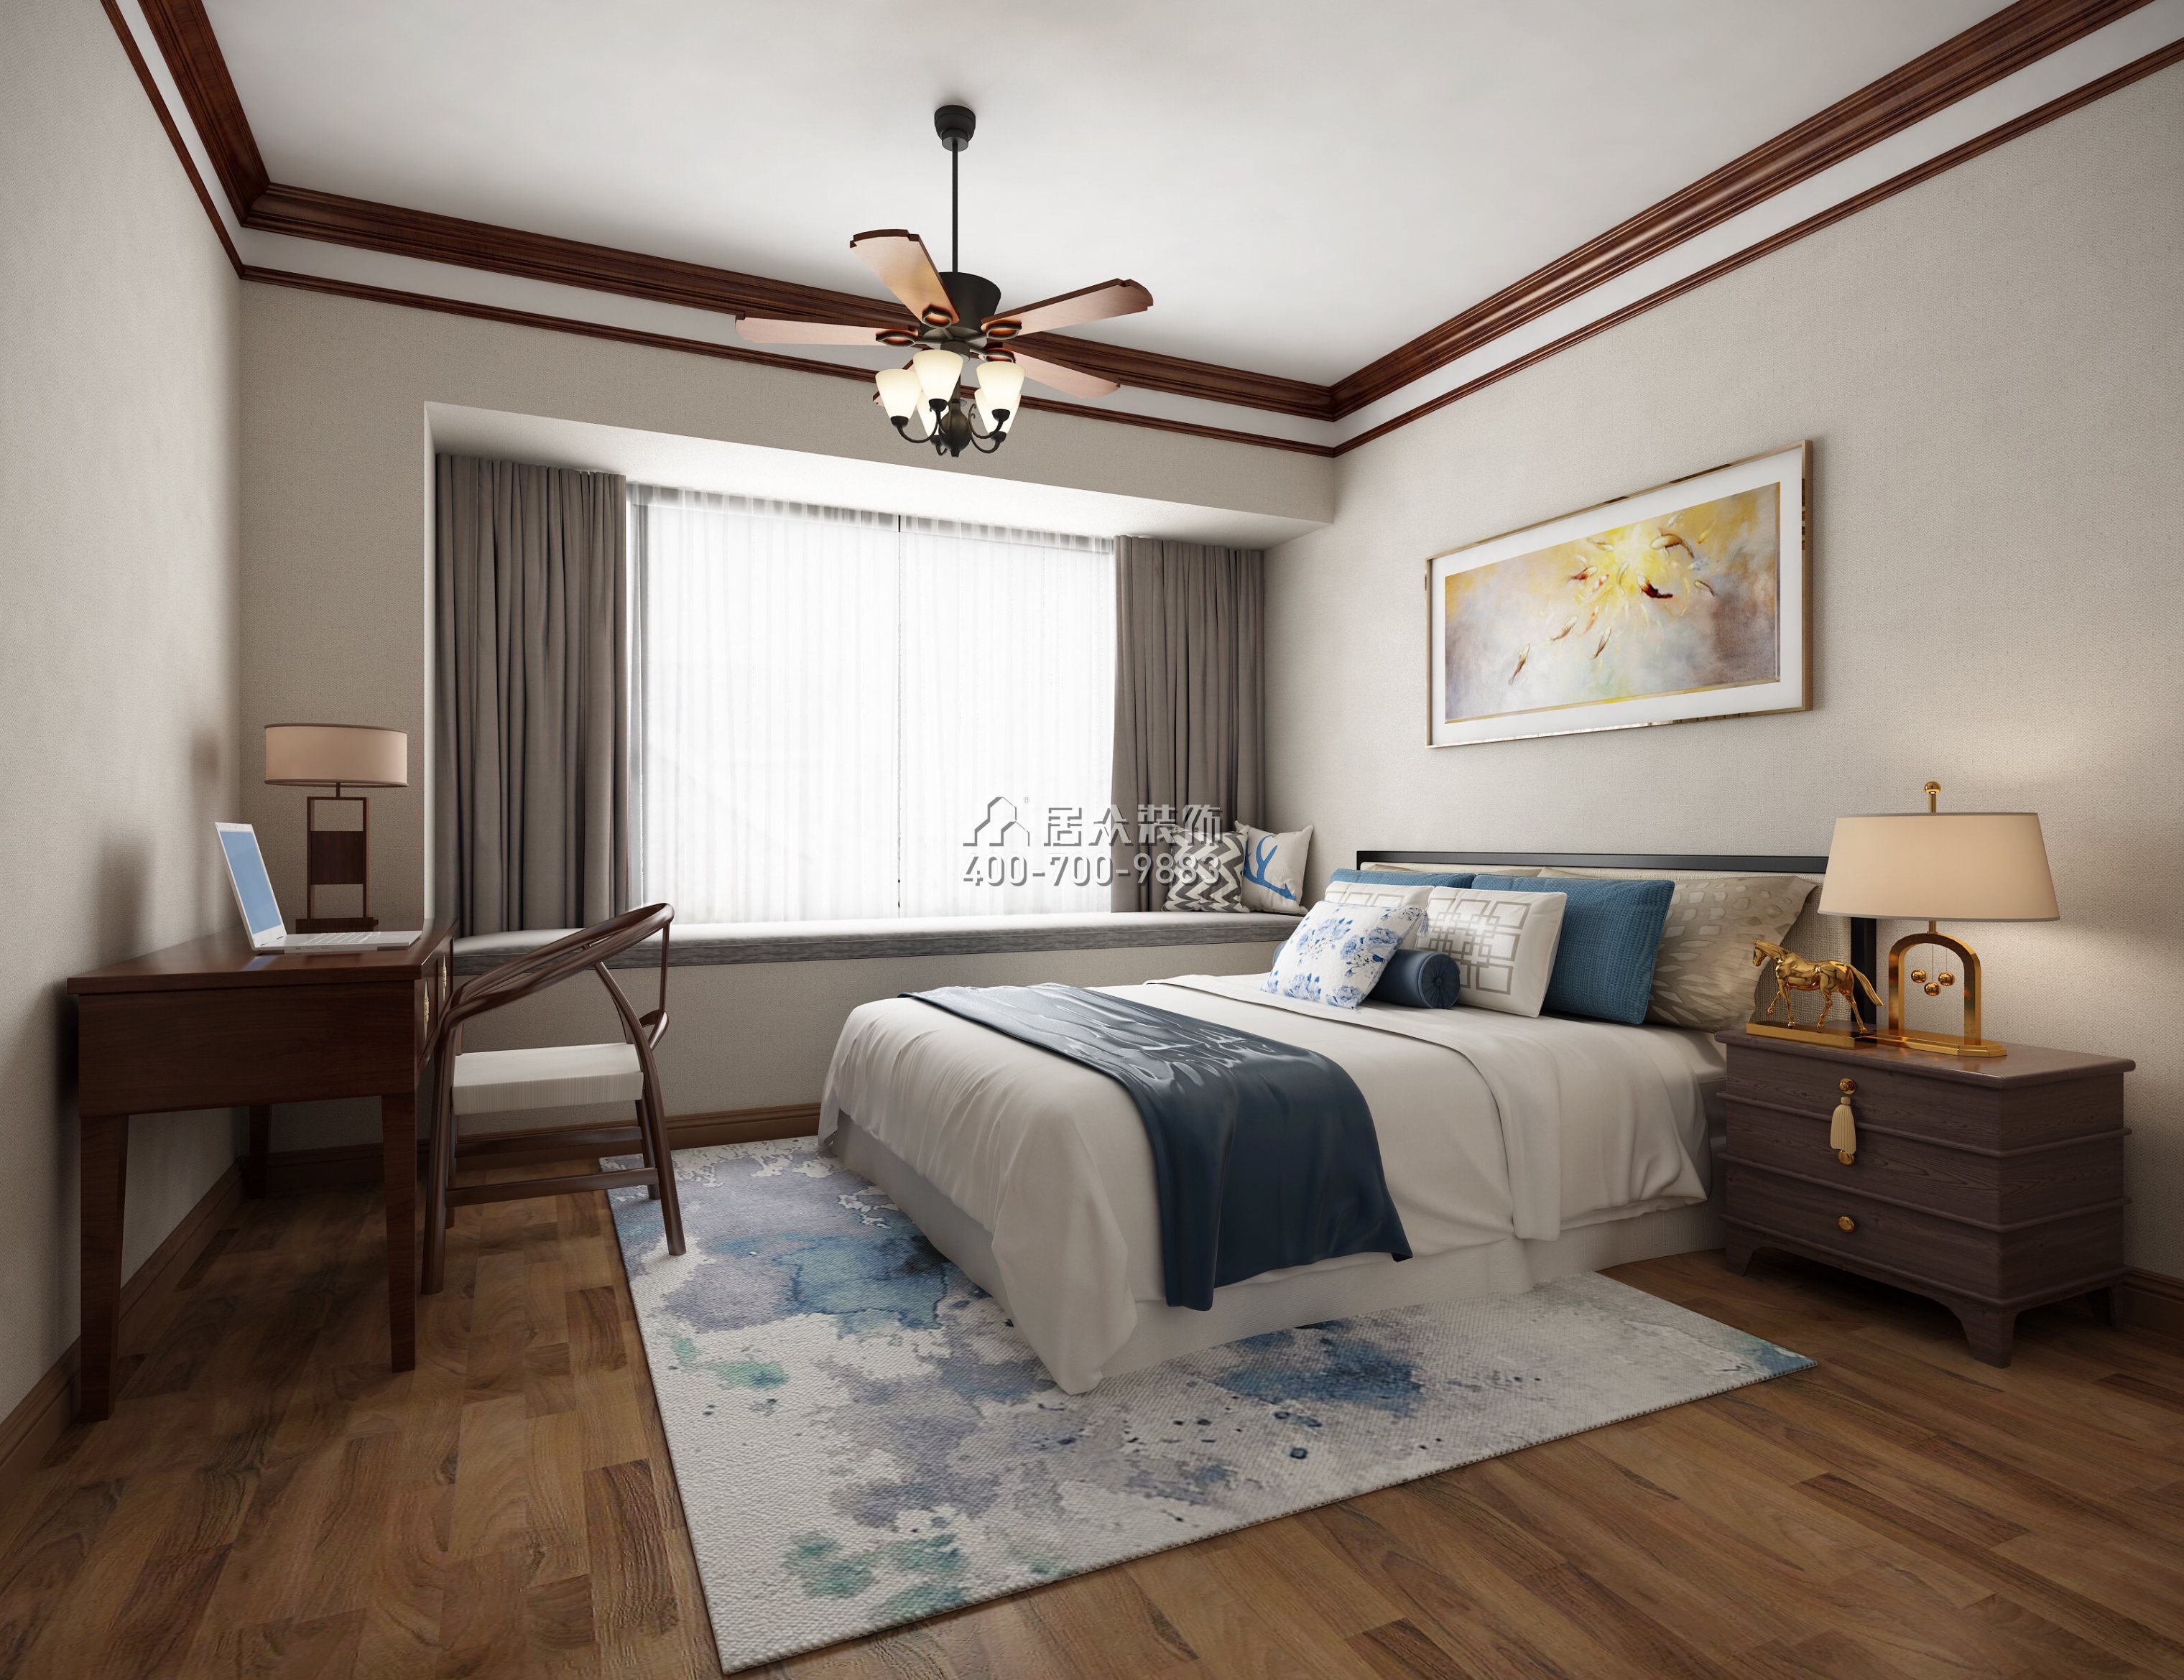 华发山庄300平方米中式风格复式户型卧室装修效果图